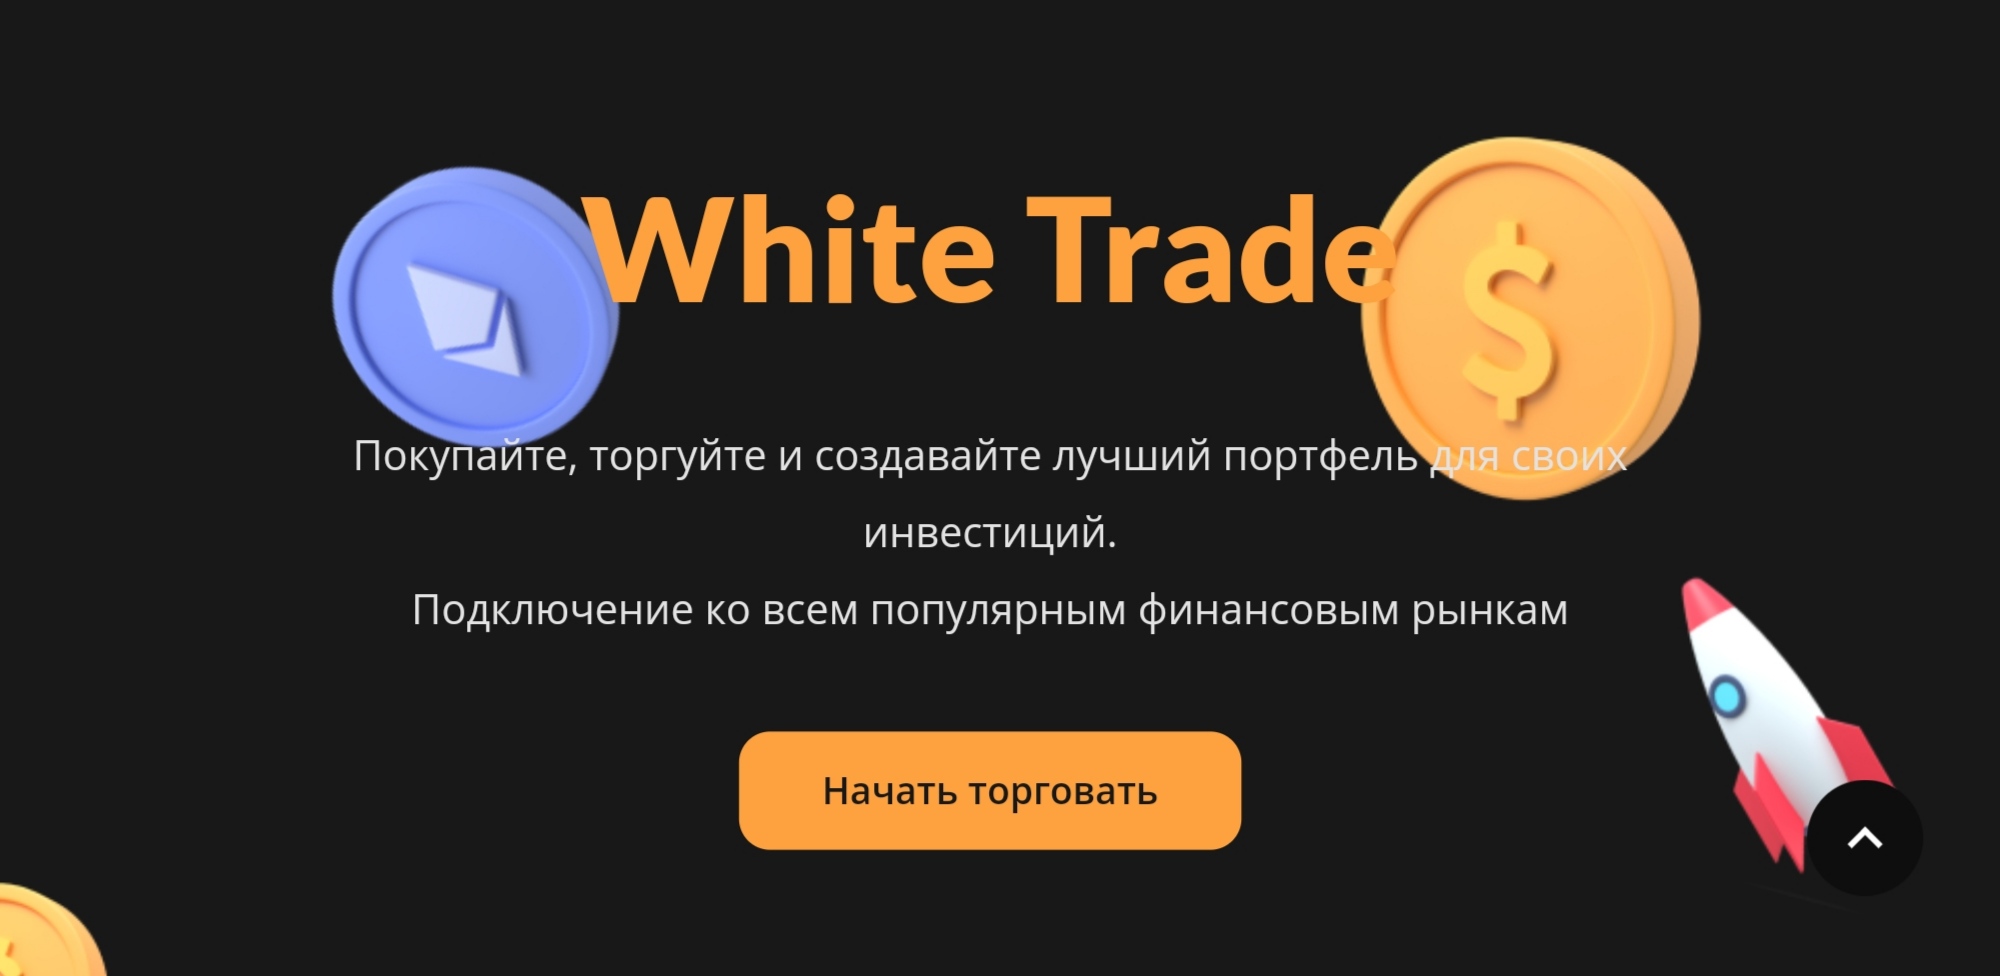 White Trade - сайт